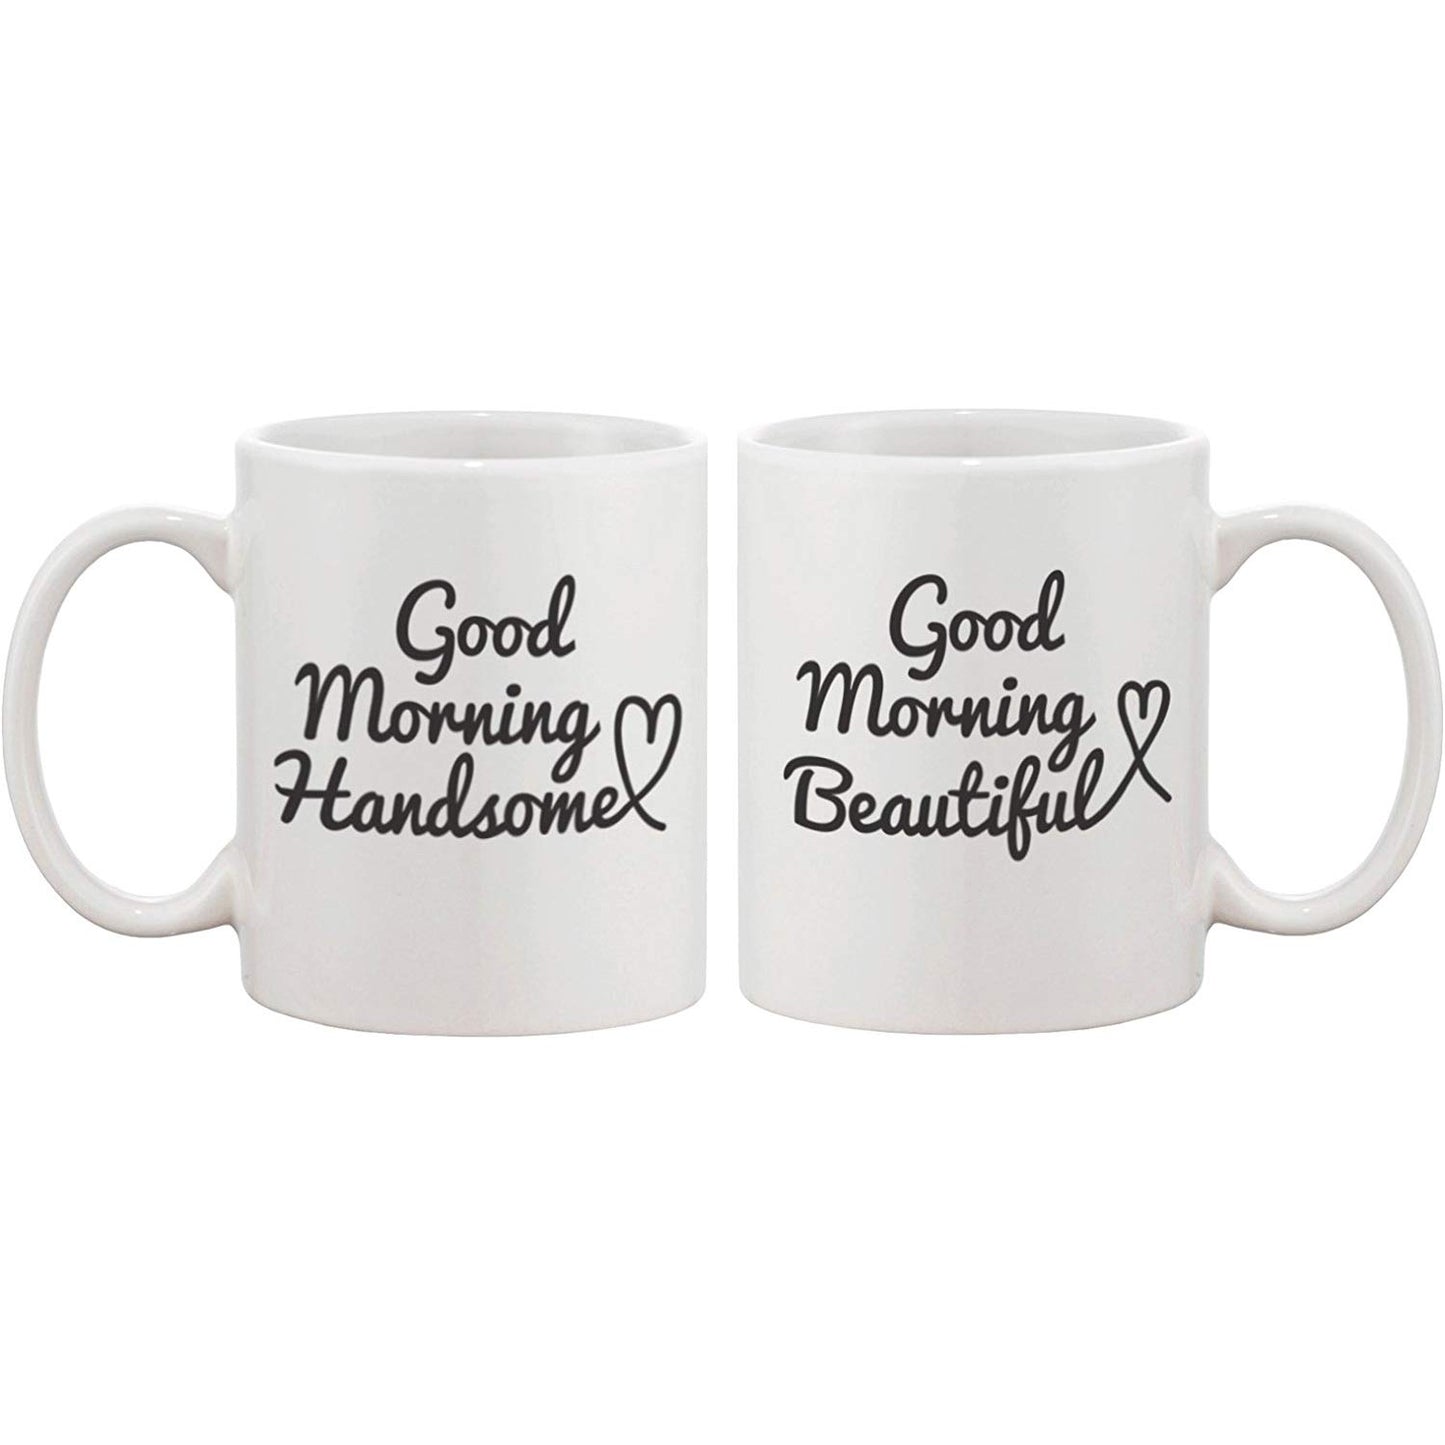 His and Hers Mug Set - oddgifts.com